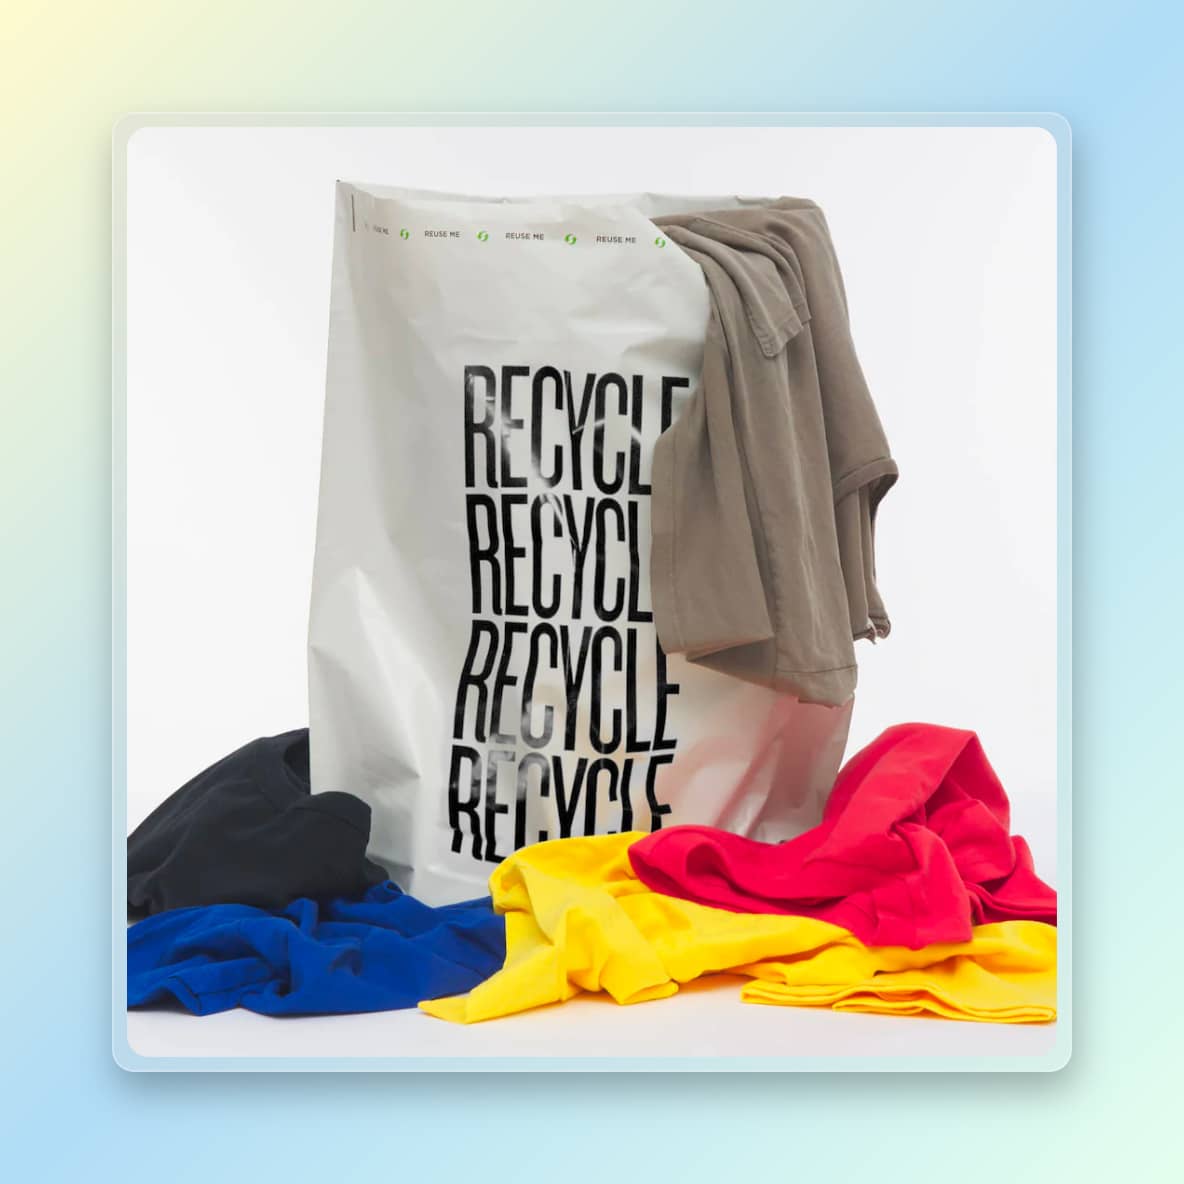 Tas voor het recyclen van kleding